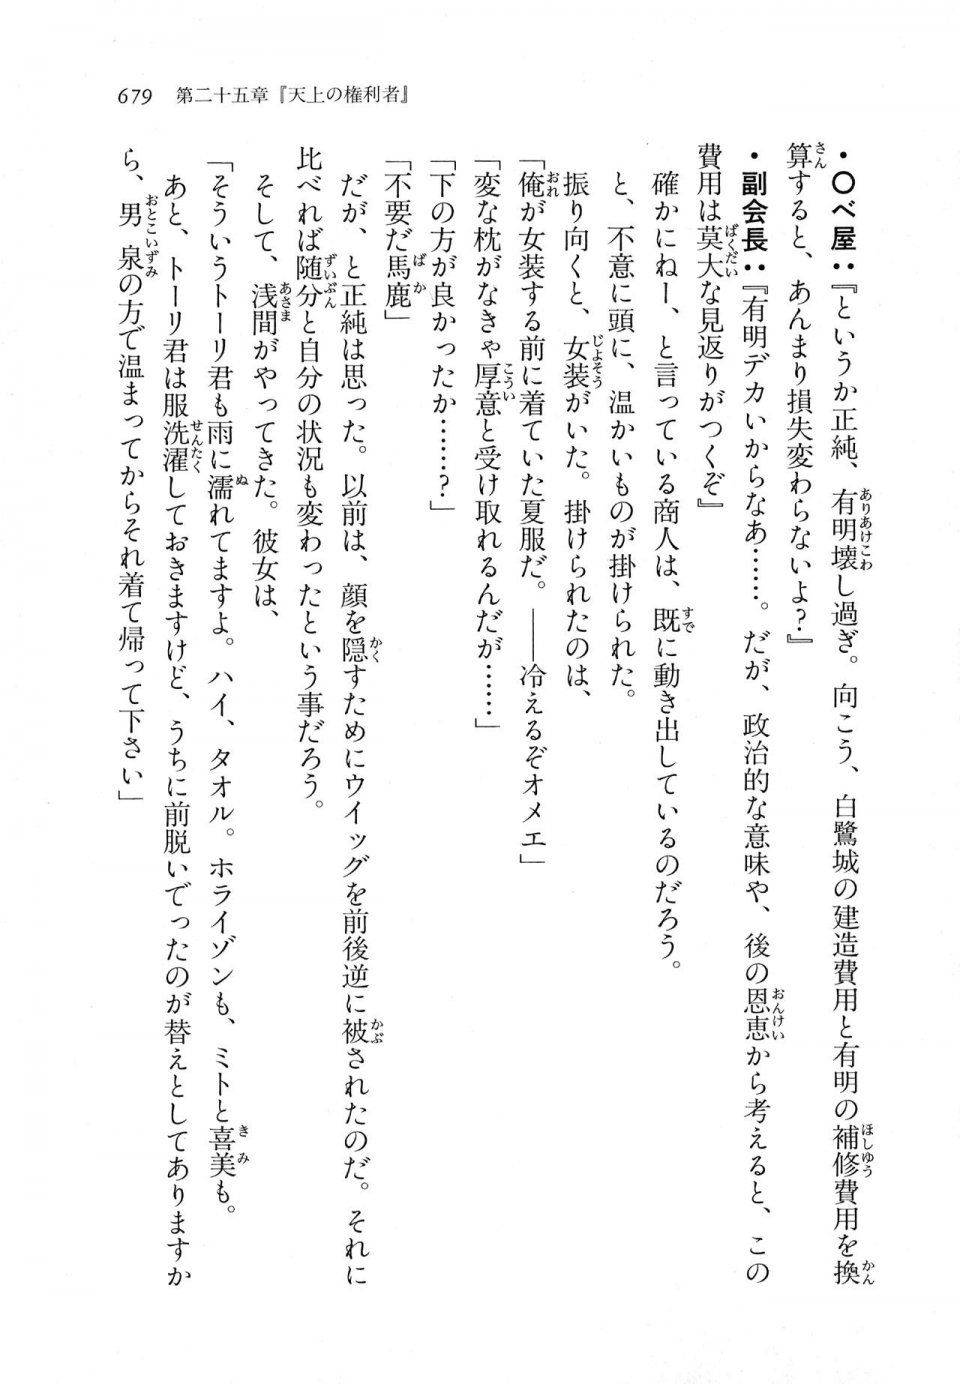 Kyoukai Senjou no Horizon LN Vol 11(5A) - Photo #679